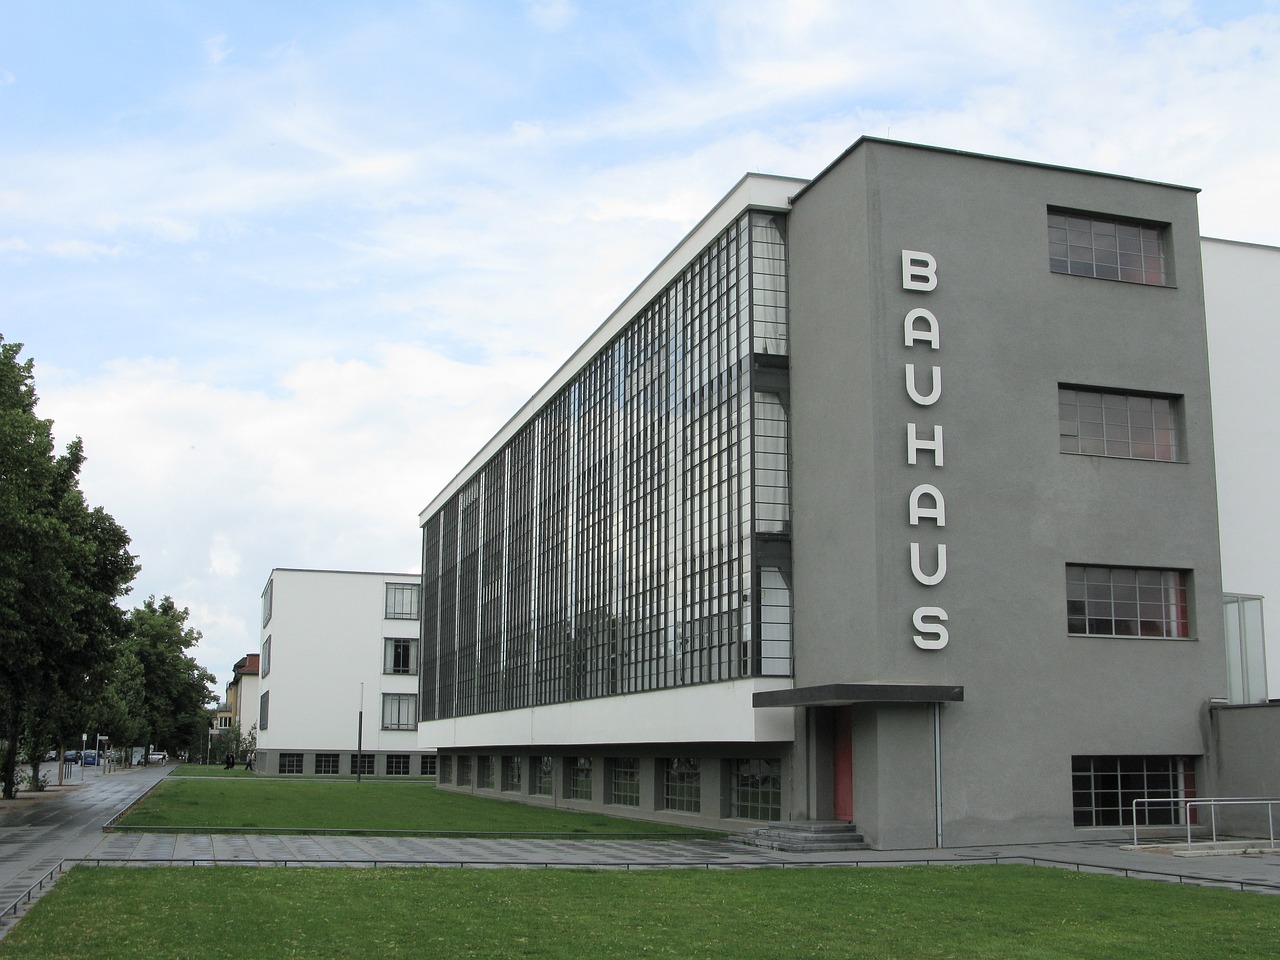 ¿Qué es la Bauhaus y como surgio?